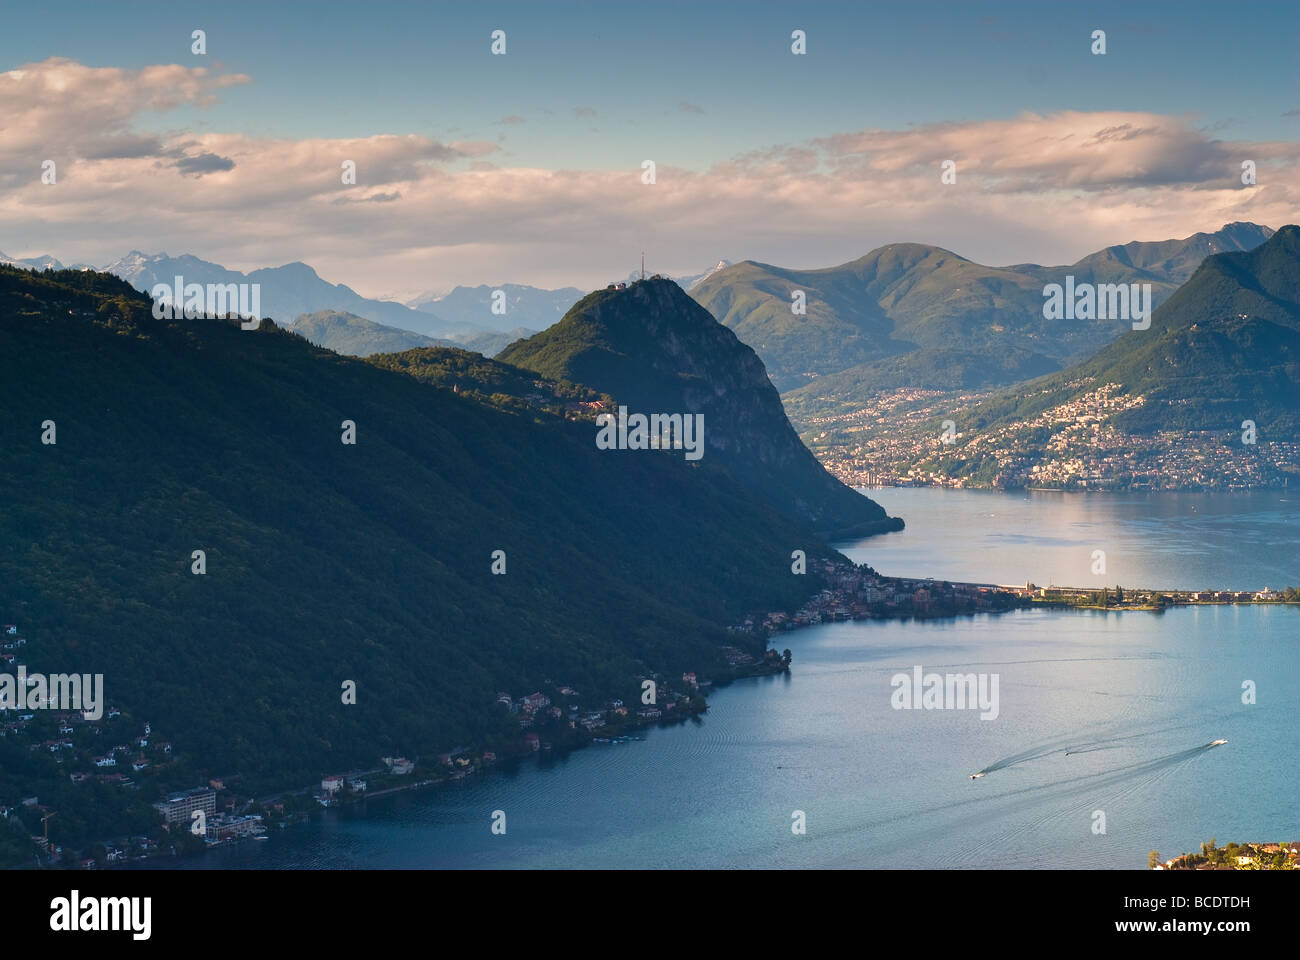 Monte San Salvatore and lake of Lugano View from Serpiano Tessin Switzerland Stock Photo